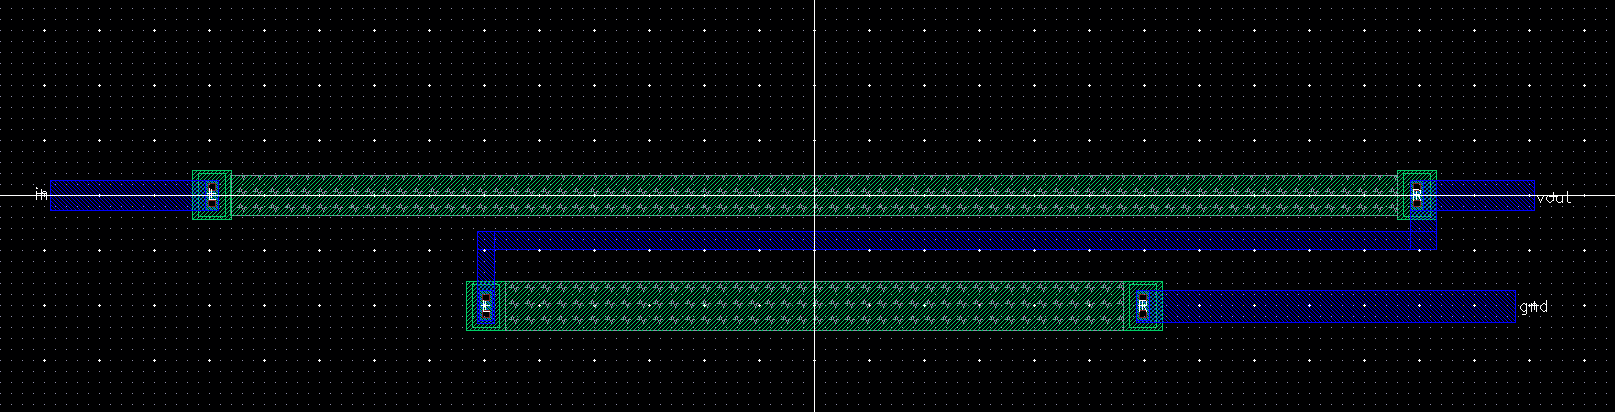 voltage_divider_layout.PNG